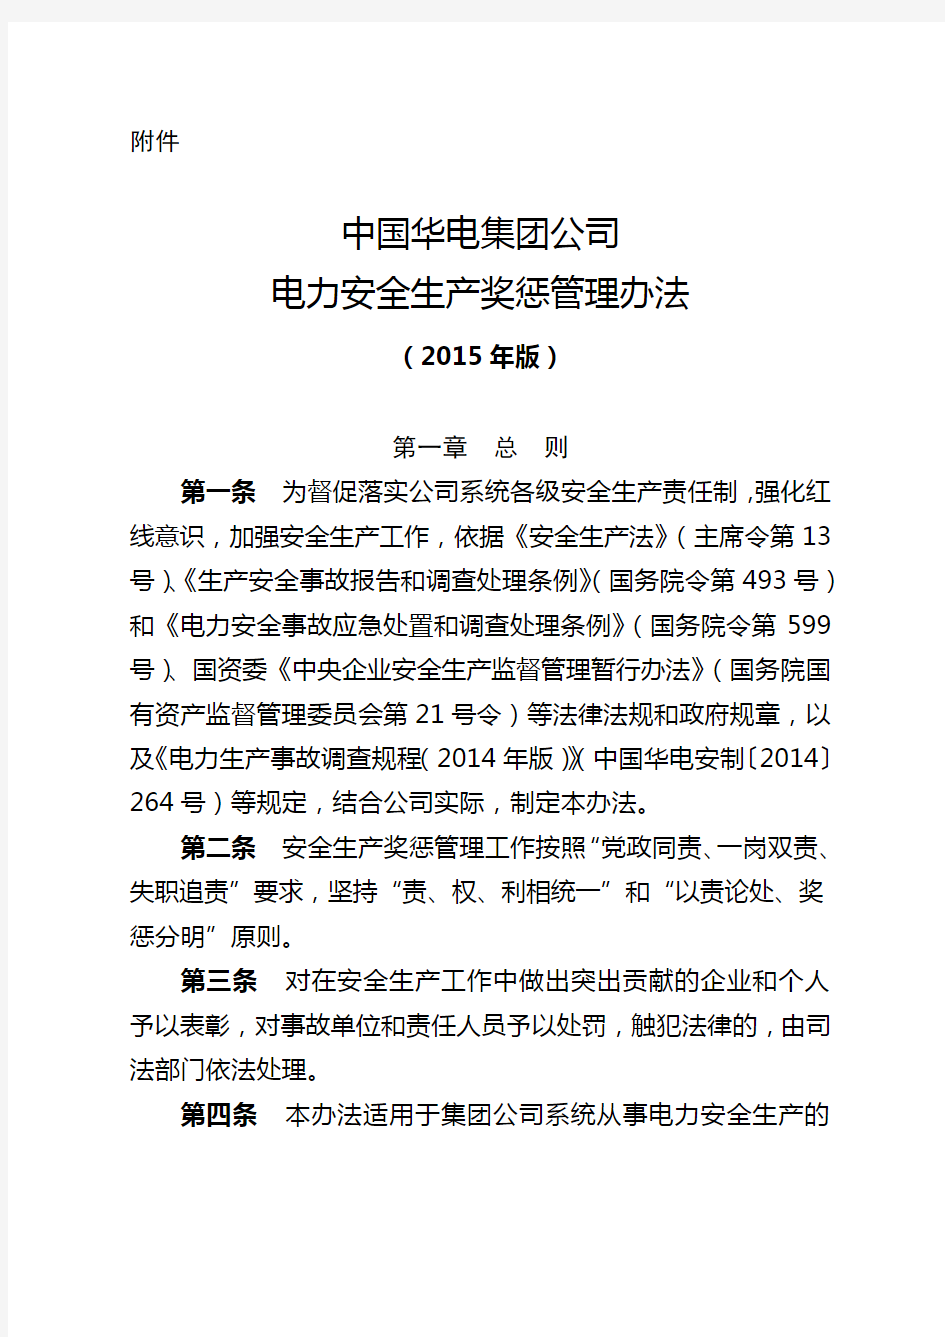 中国华电集团公司电力安全生产奖惩管理办法 版